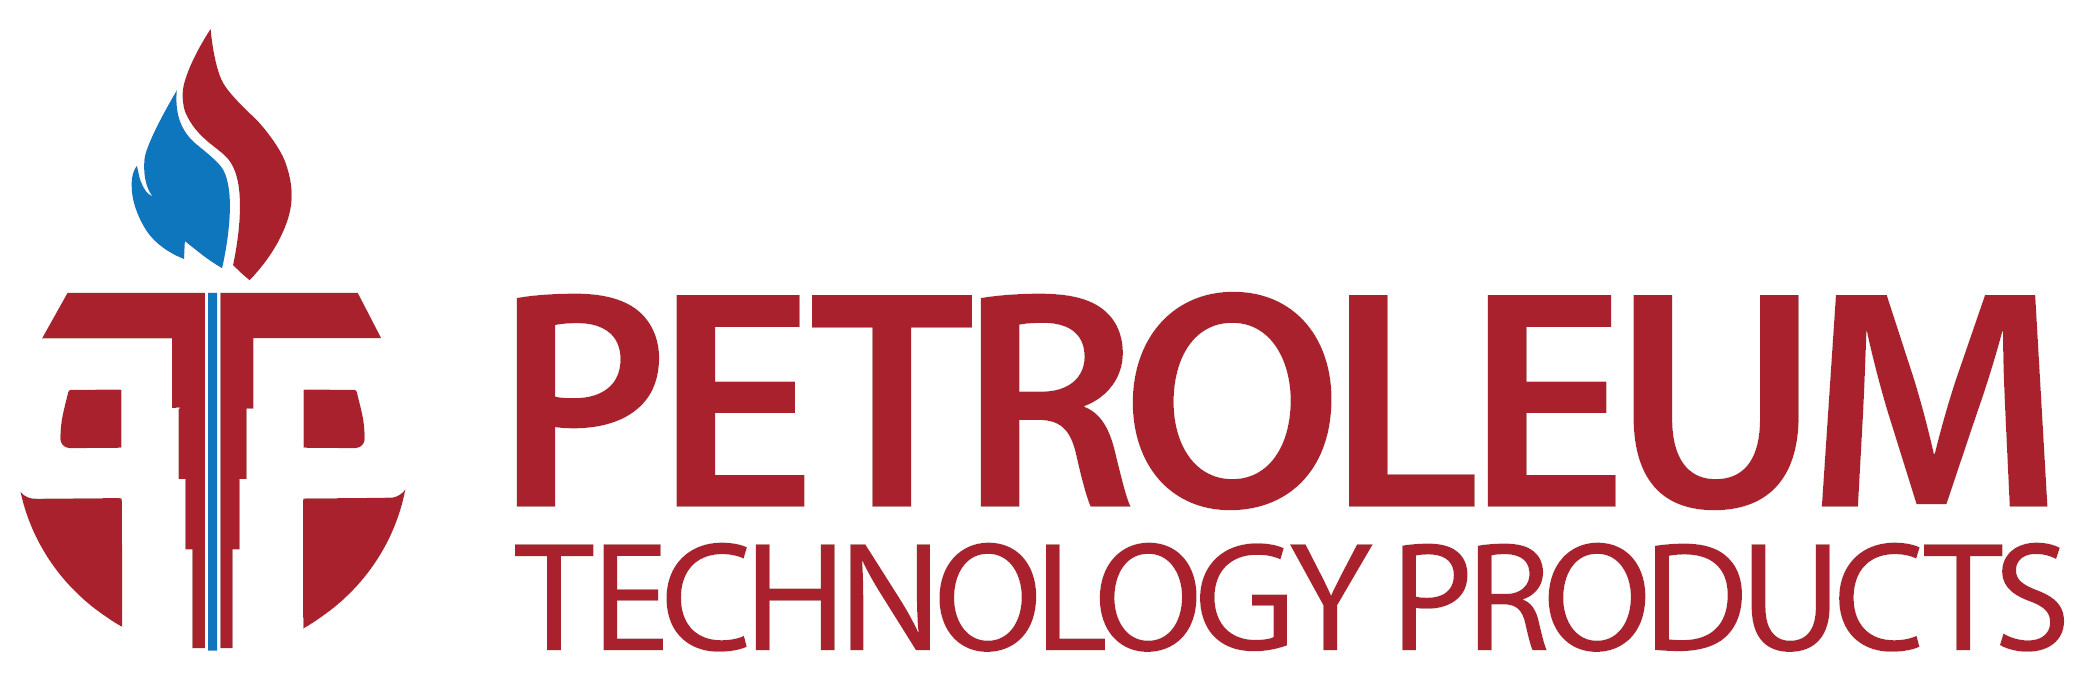 Petroleum Technology Products Pte Ltd (PTP) - Singapore